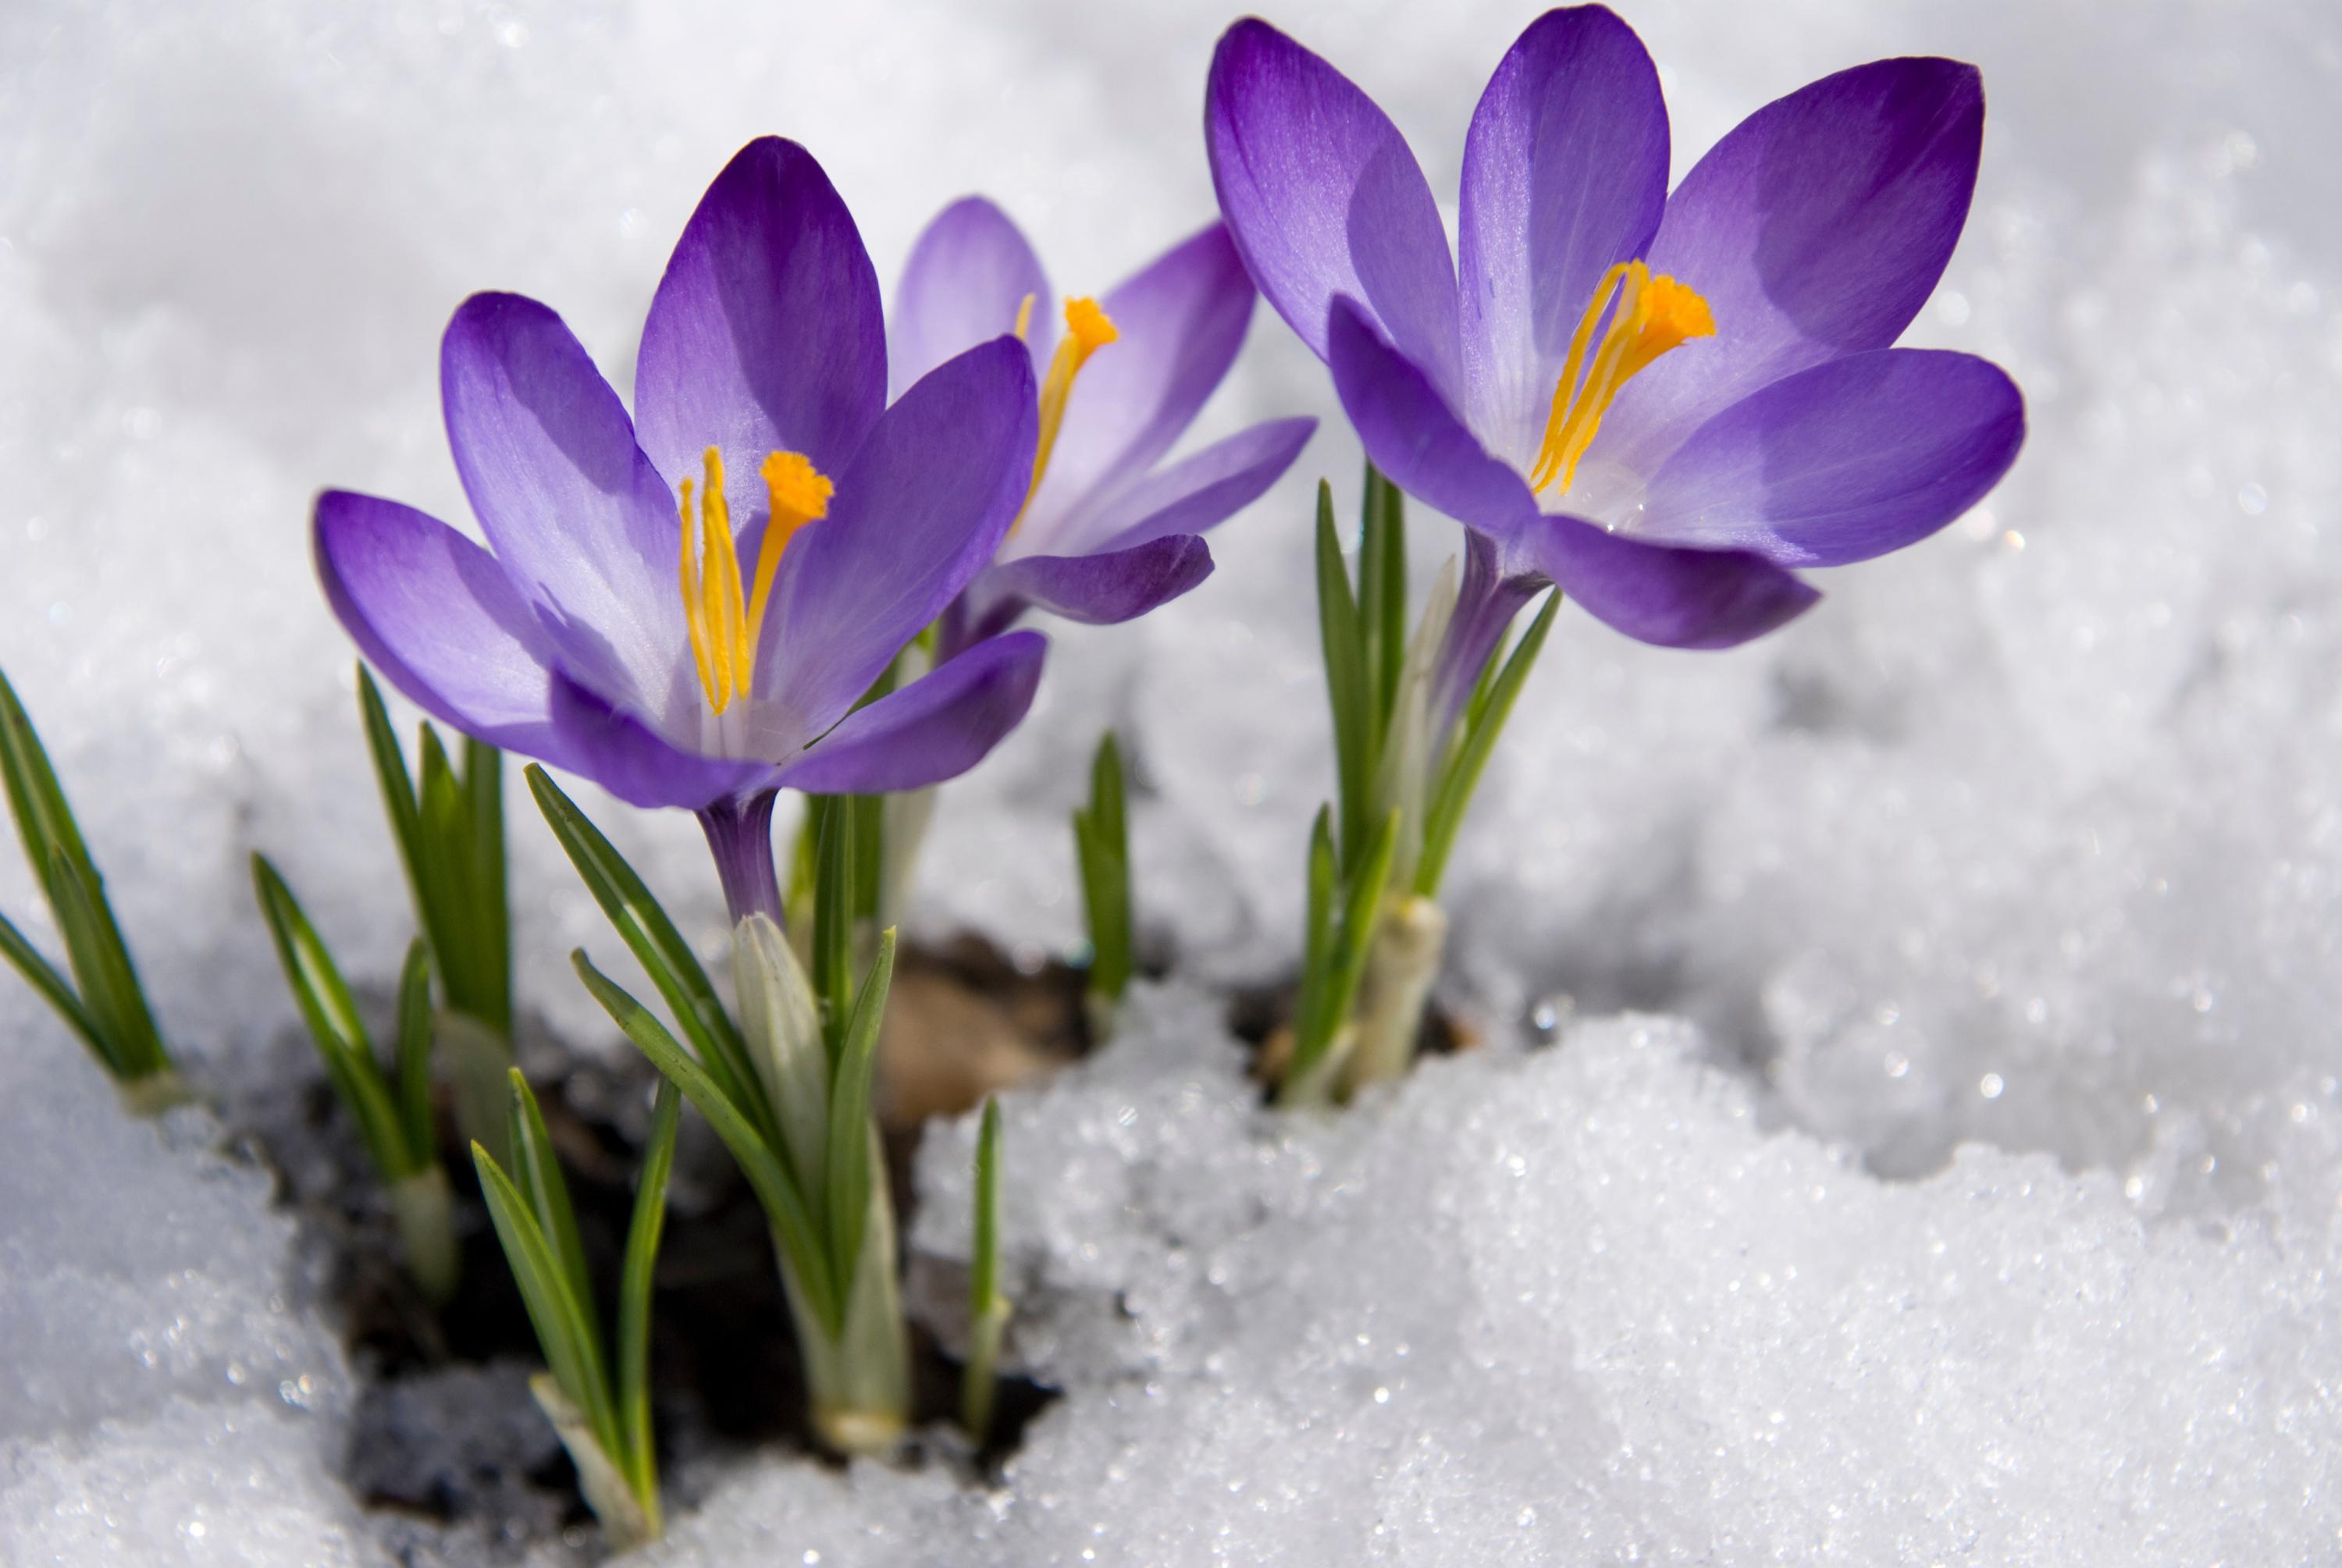 février : quelles sont les fleurs de saison ?